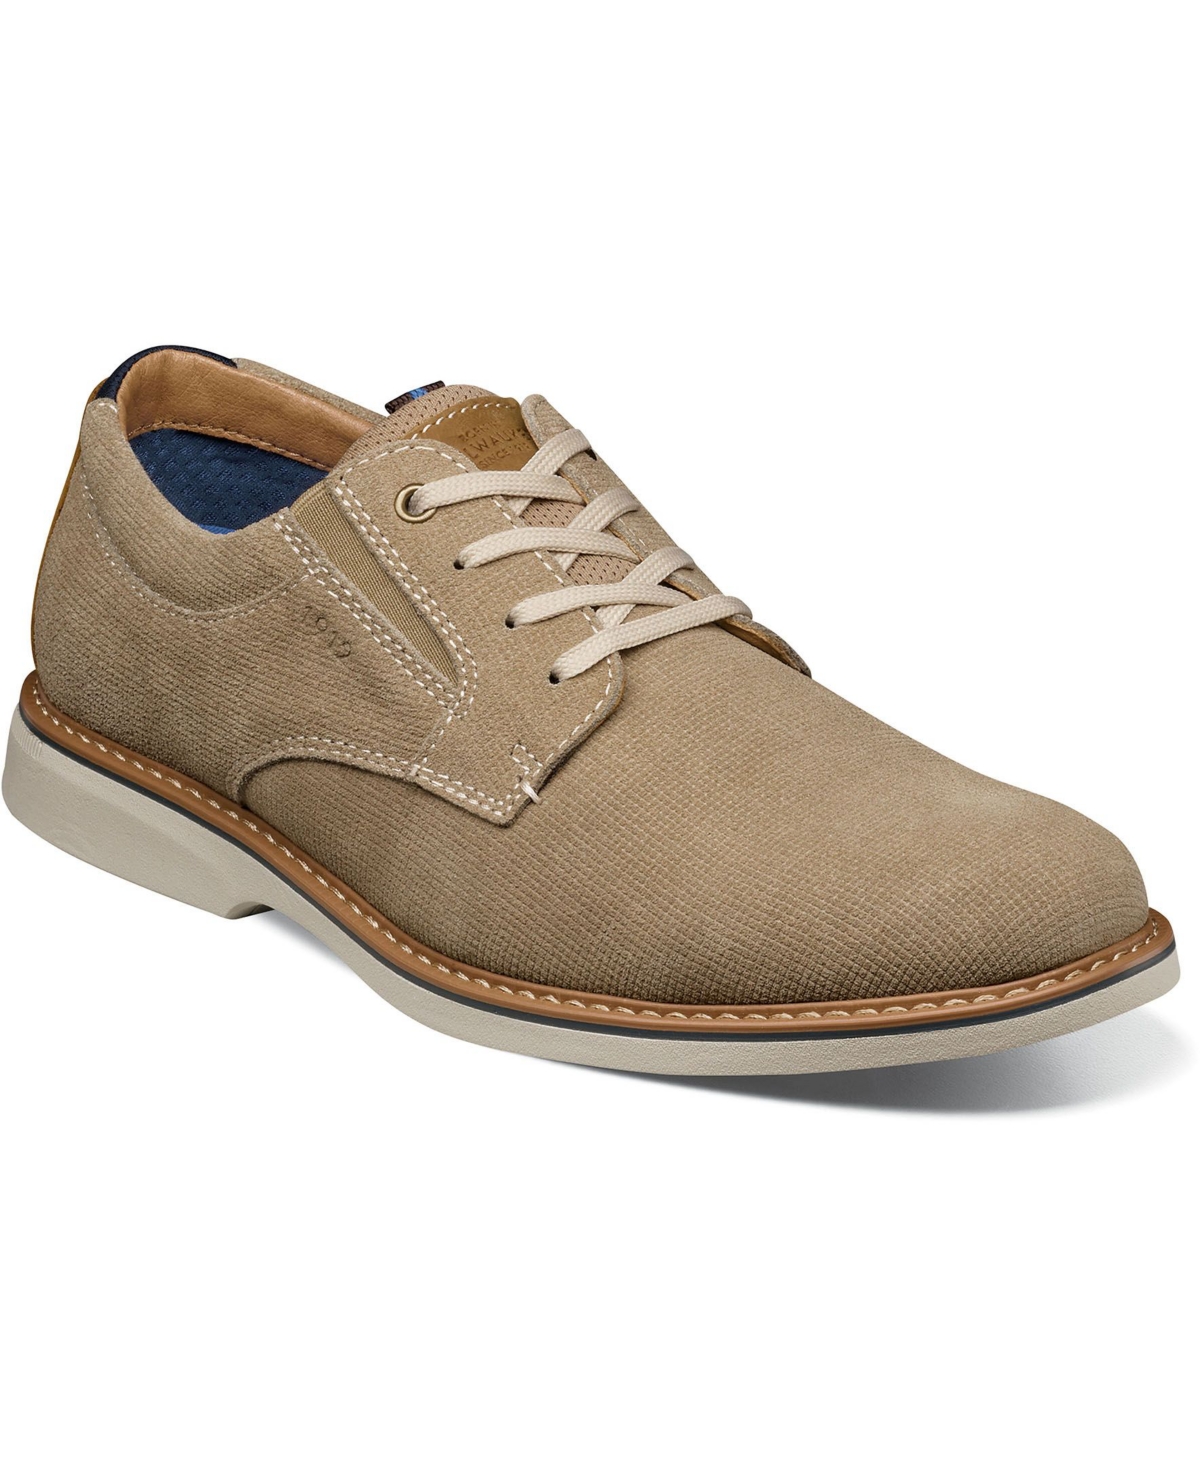 Men's Otto Plain Toe Lace Up Oxford Shoes - Navy